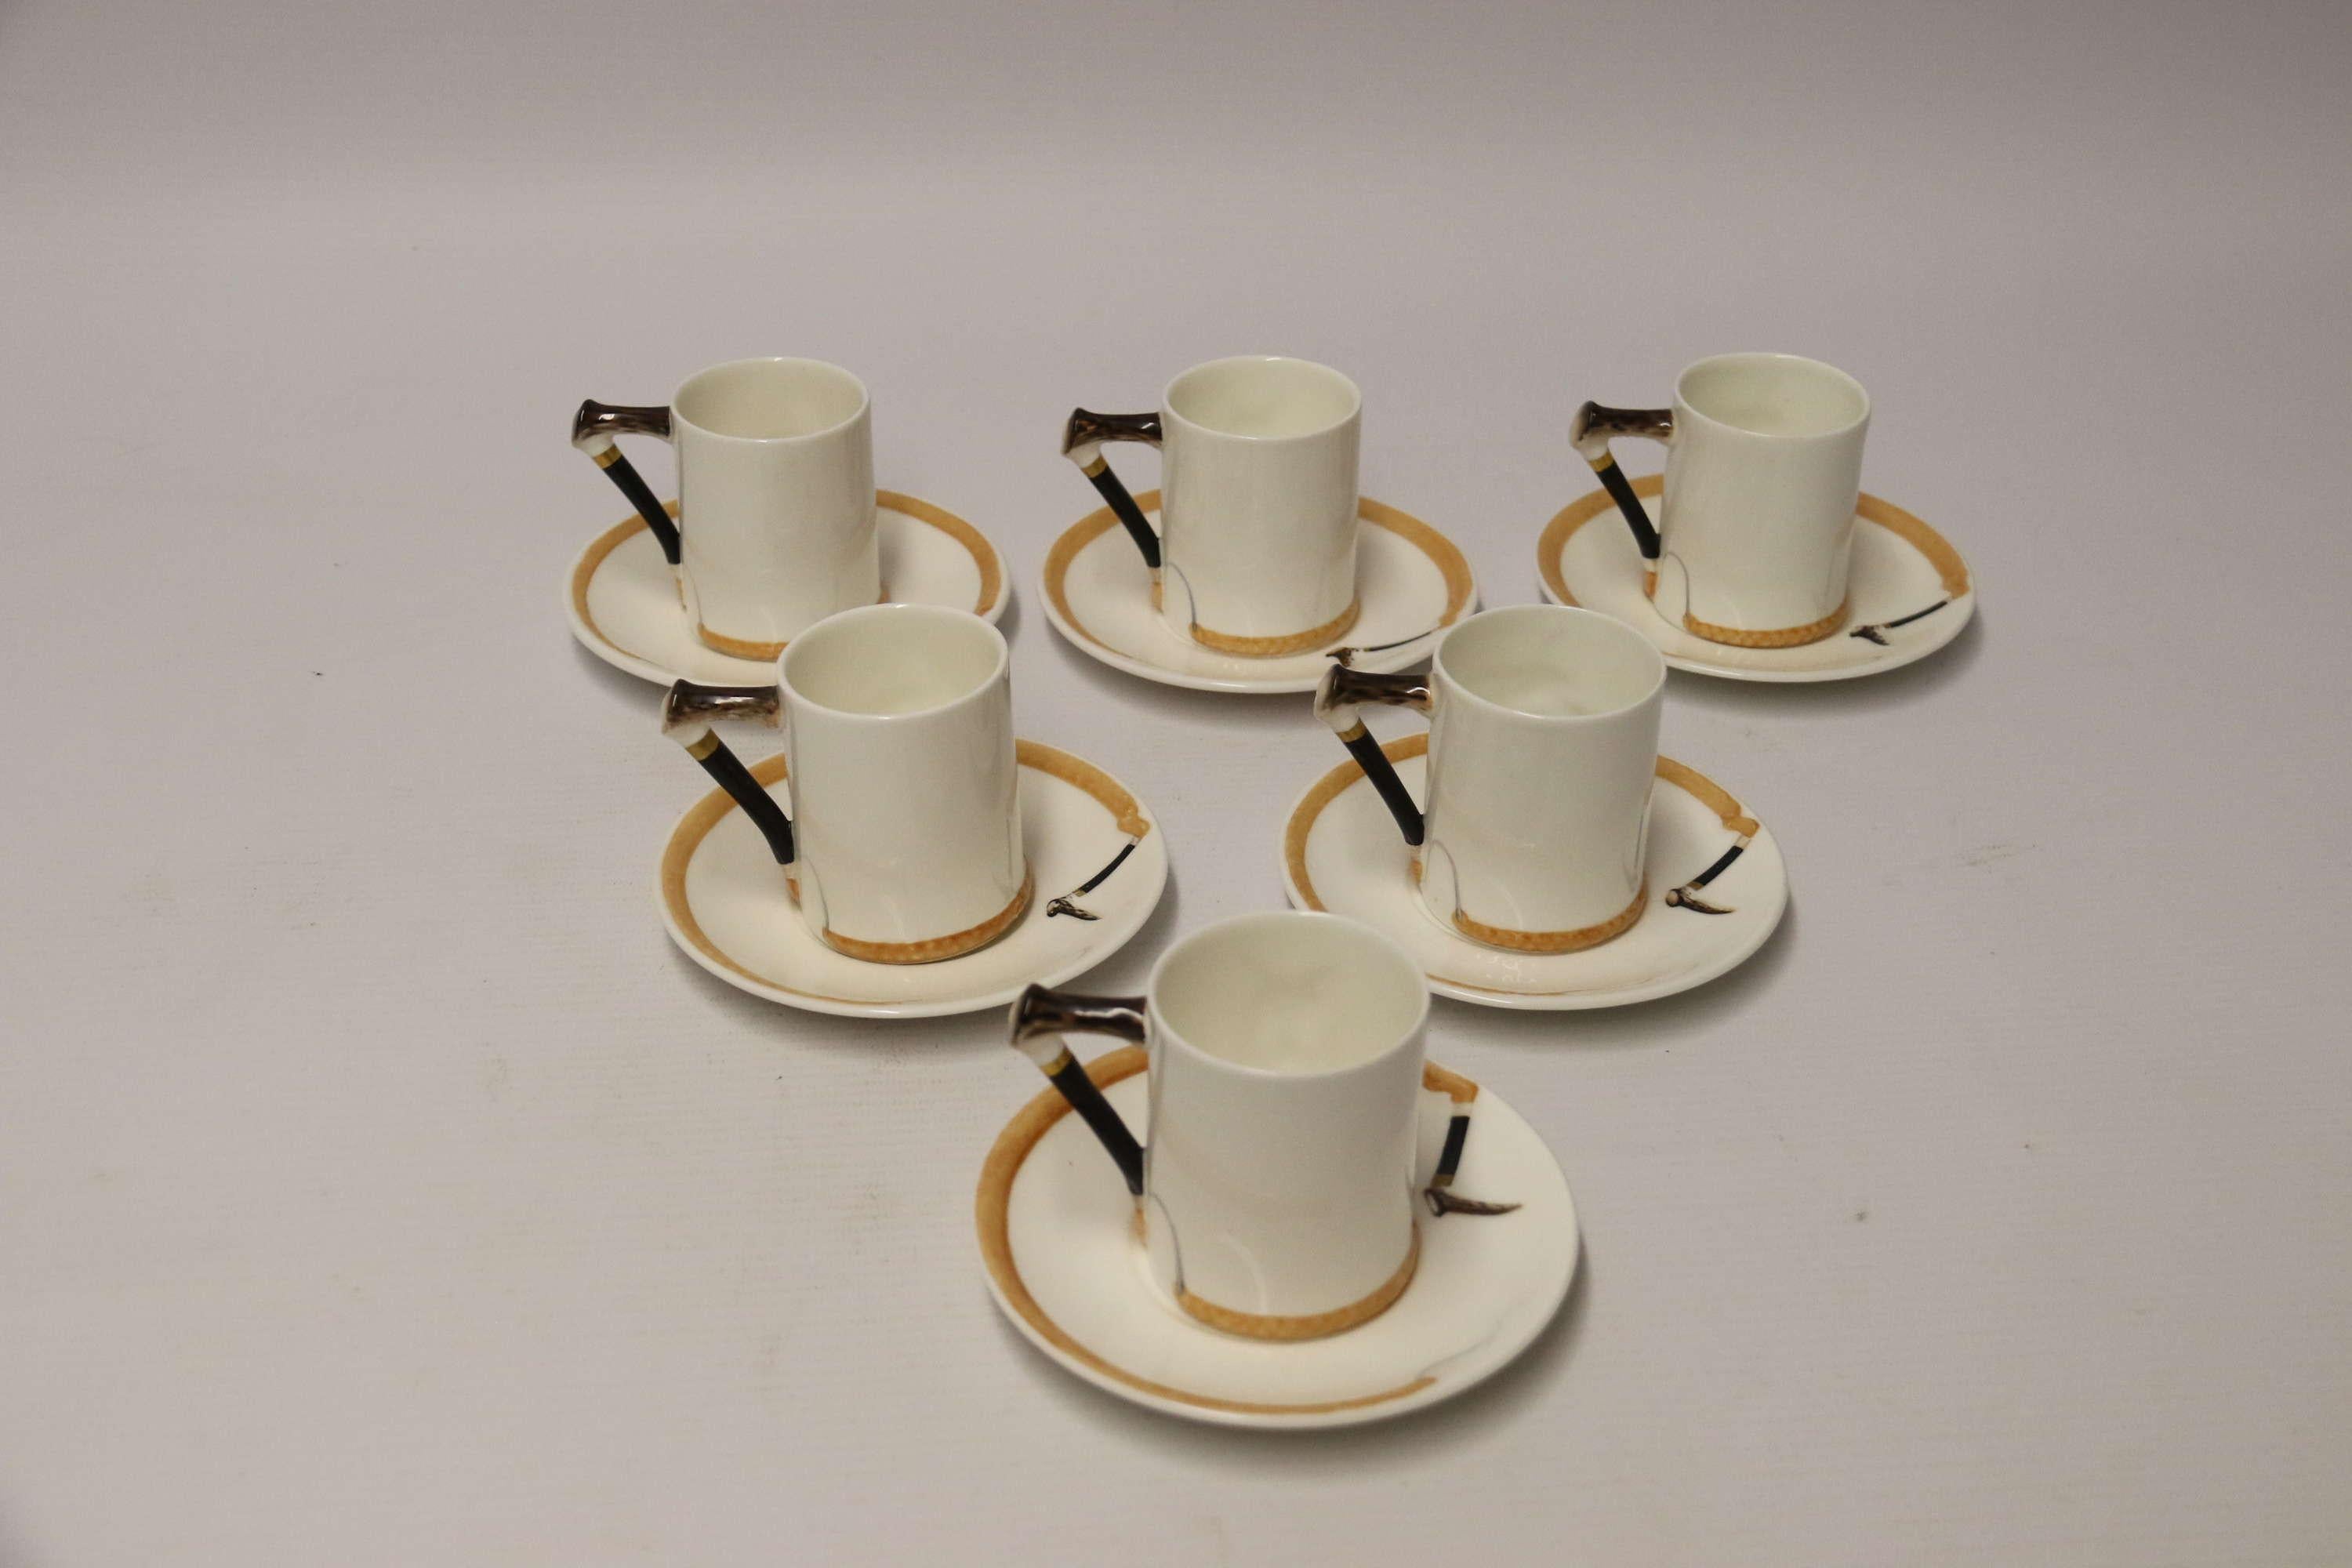 Un ensemble de six tasses à café et soucoupes Royal Doulton en forme de renard anglais.

Un ensemble très décoratif de six tasses et soucoupes à café anglaises Royal Doulton avec un ensemble de cuillères à café en métal argenté. Cet ensemble